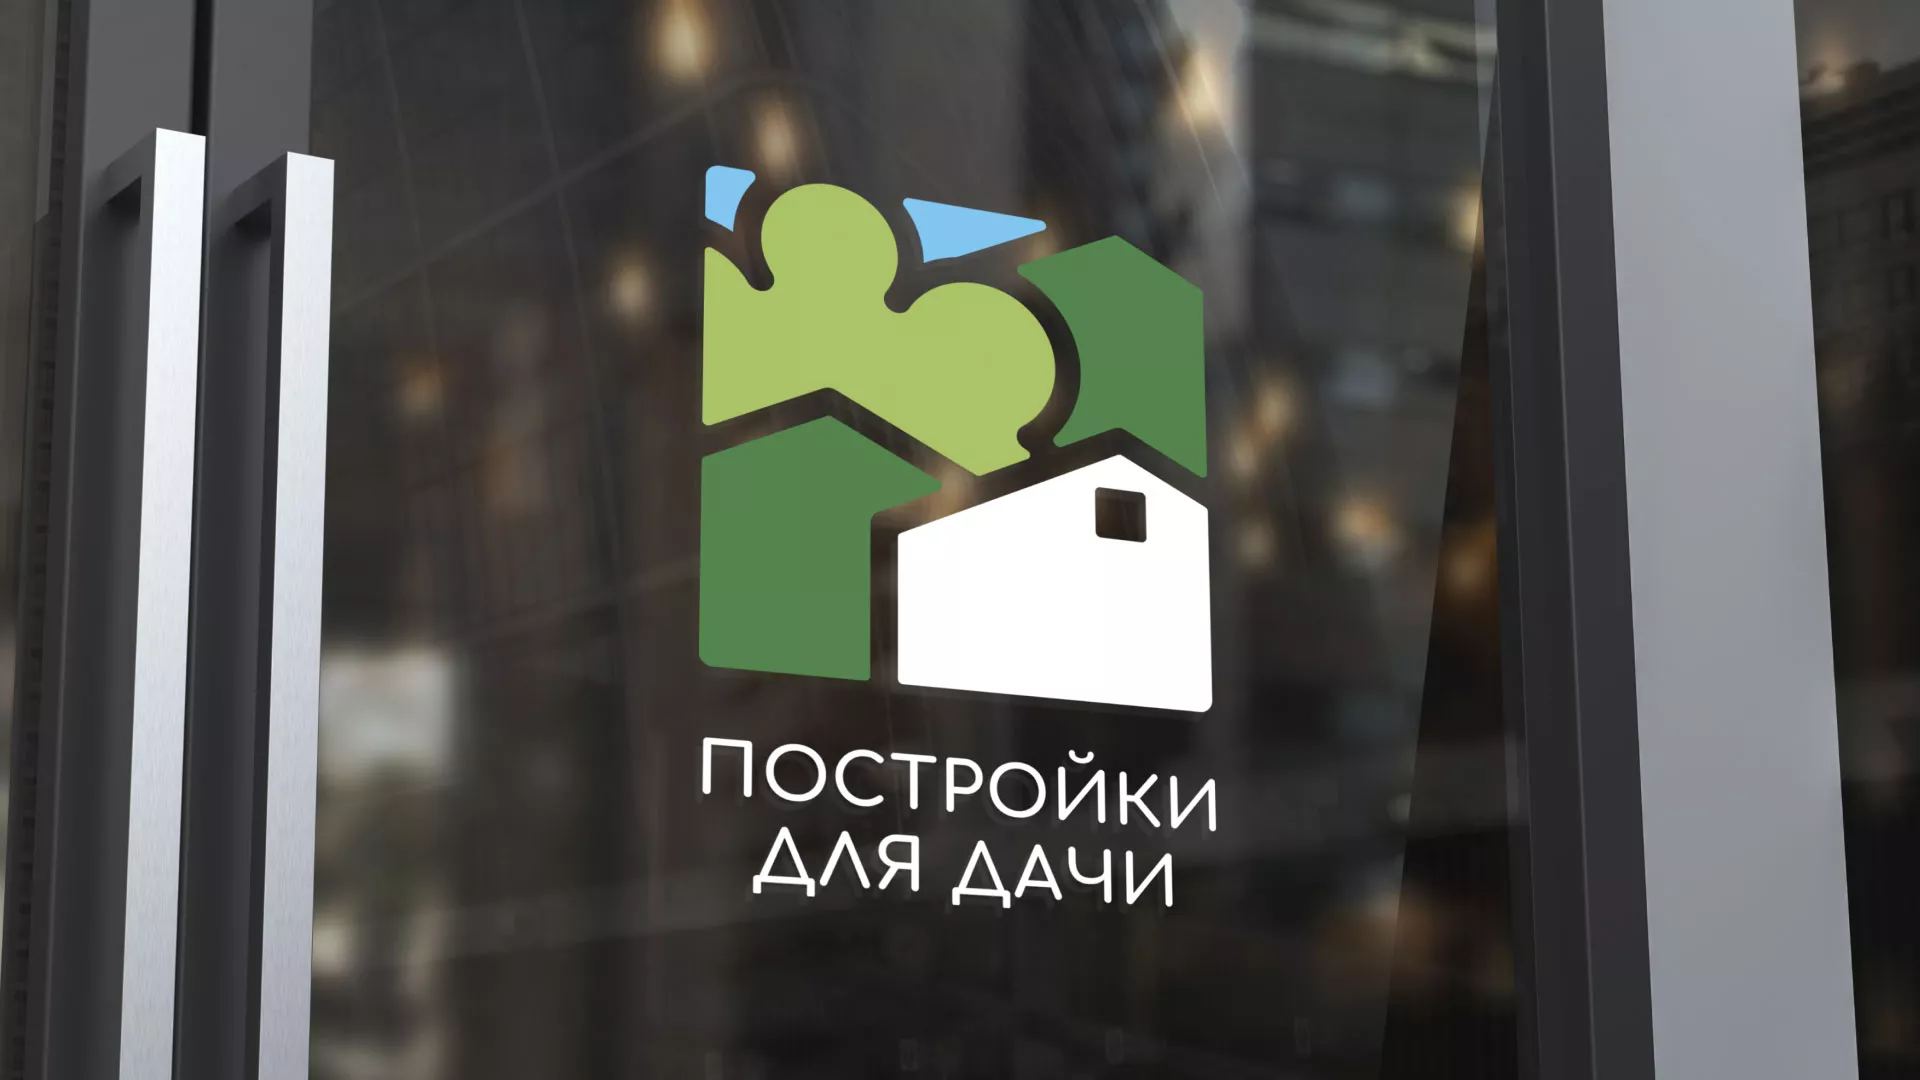 Разработка логотипа в Шилке для компании «Постройки для дачи»